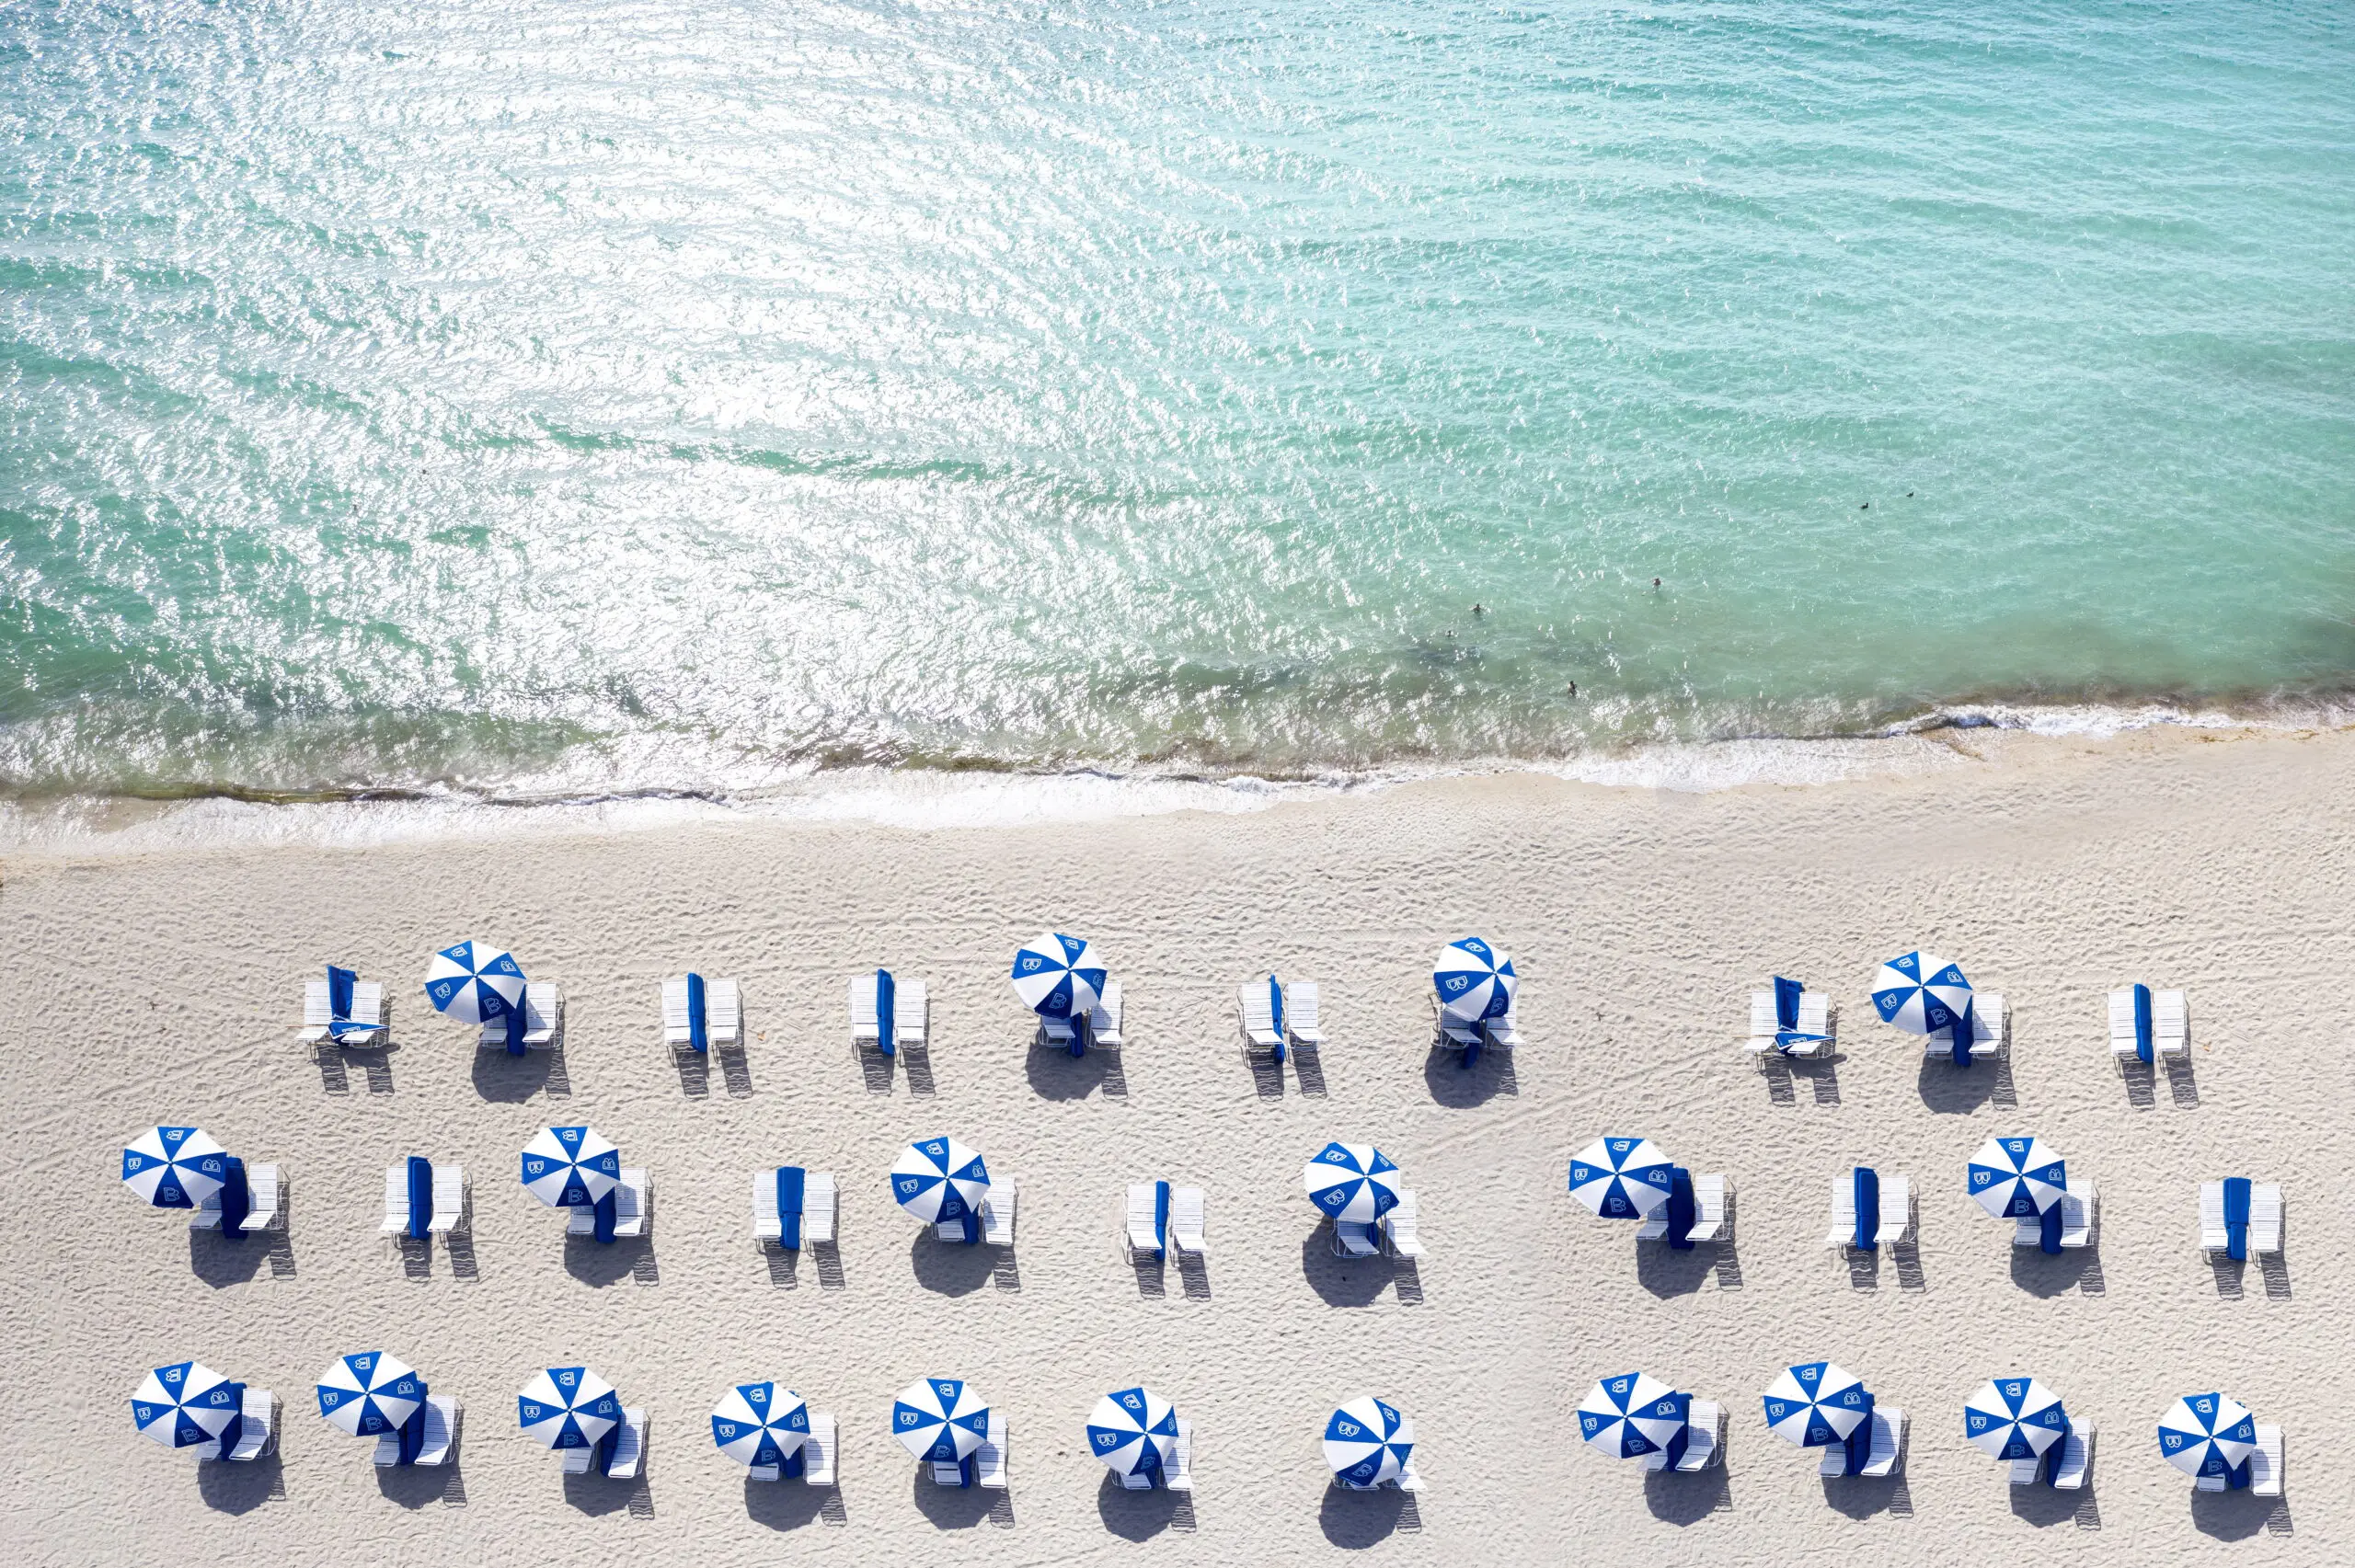 Wandbild (6044) Miami Beach by Susanne Kremer/HUBER IMAGES präsentiert: Menschen,Wasser,Natur,Landschaften,Sommer,Strände,Amerika,Menschengruppen,Meere